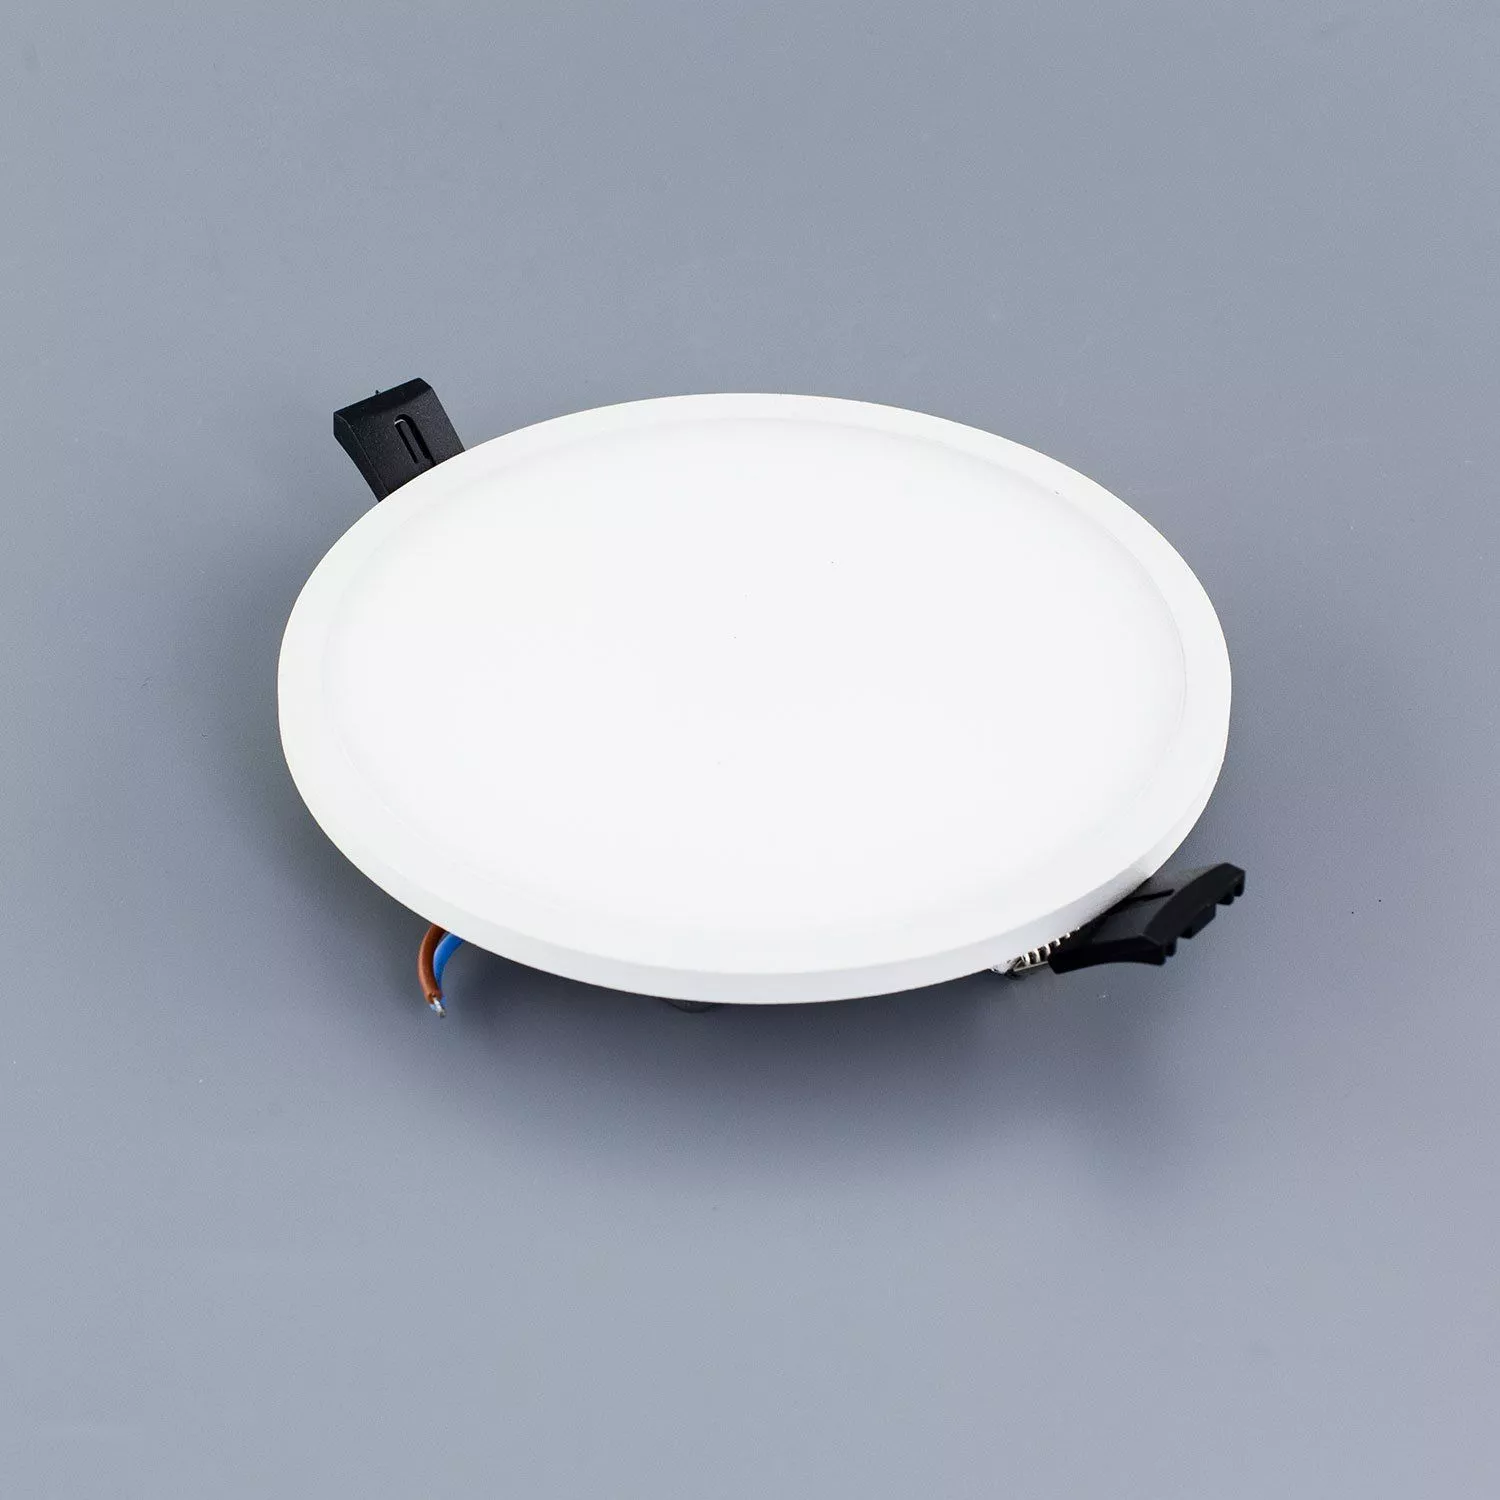 Встраиваемый светильник Омега D 145 белый (теплый свет) Citilux CLD50R150